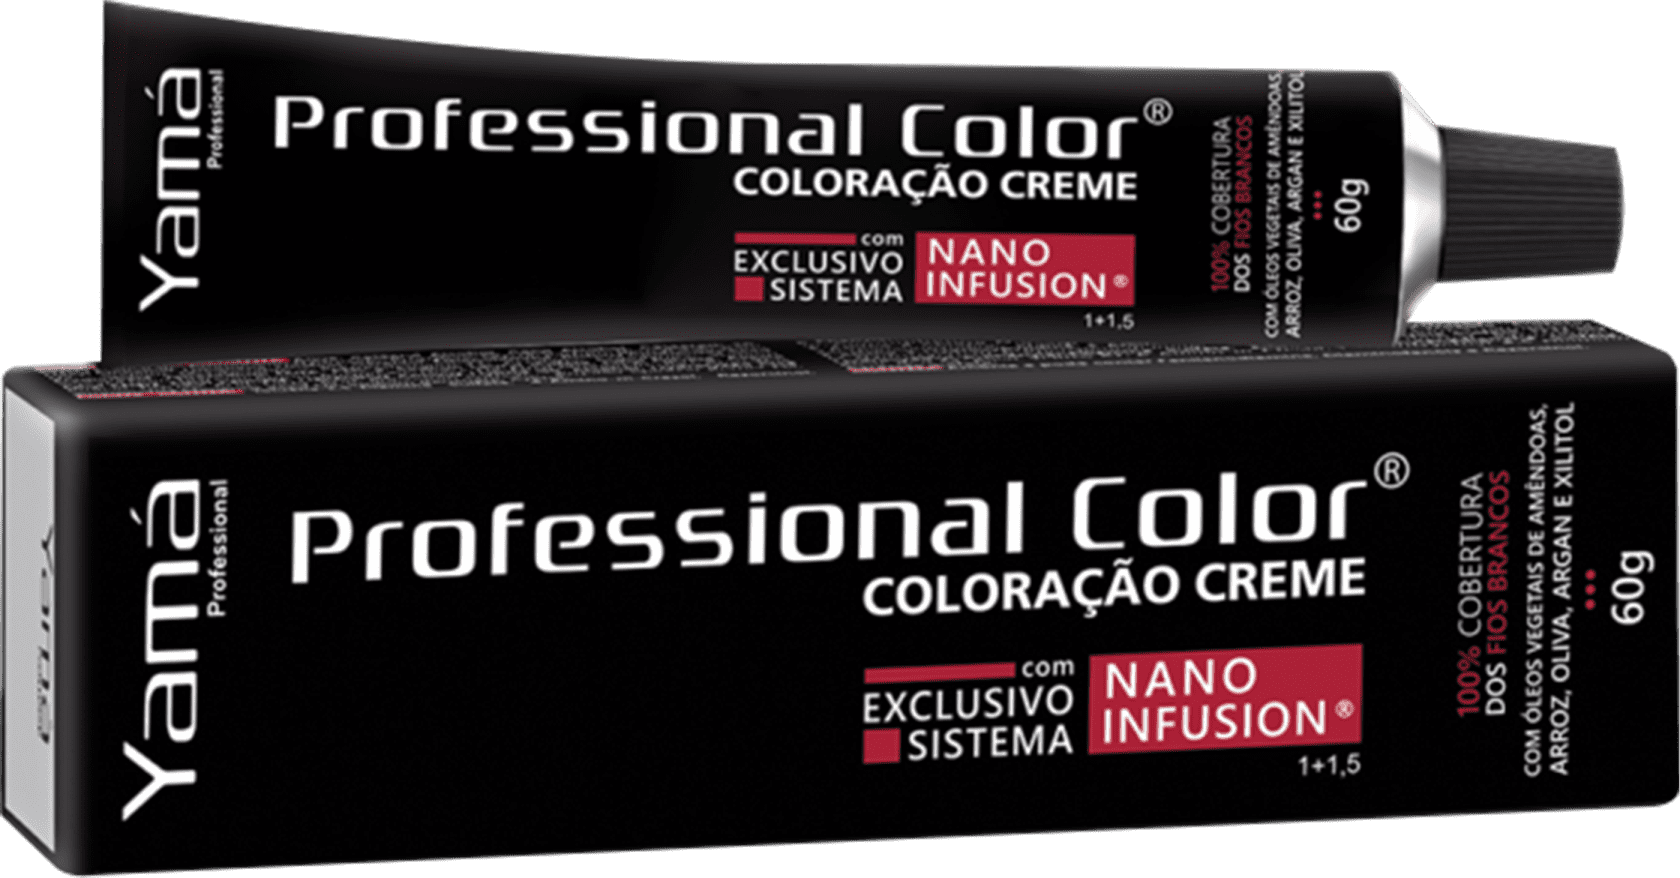 Coloracao Yama Profissional Color Nano Infusion 6.0 Louro Escuro